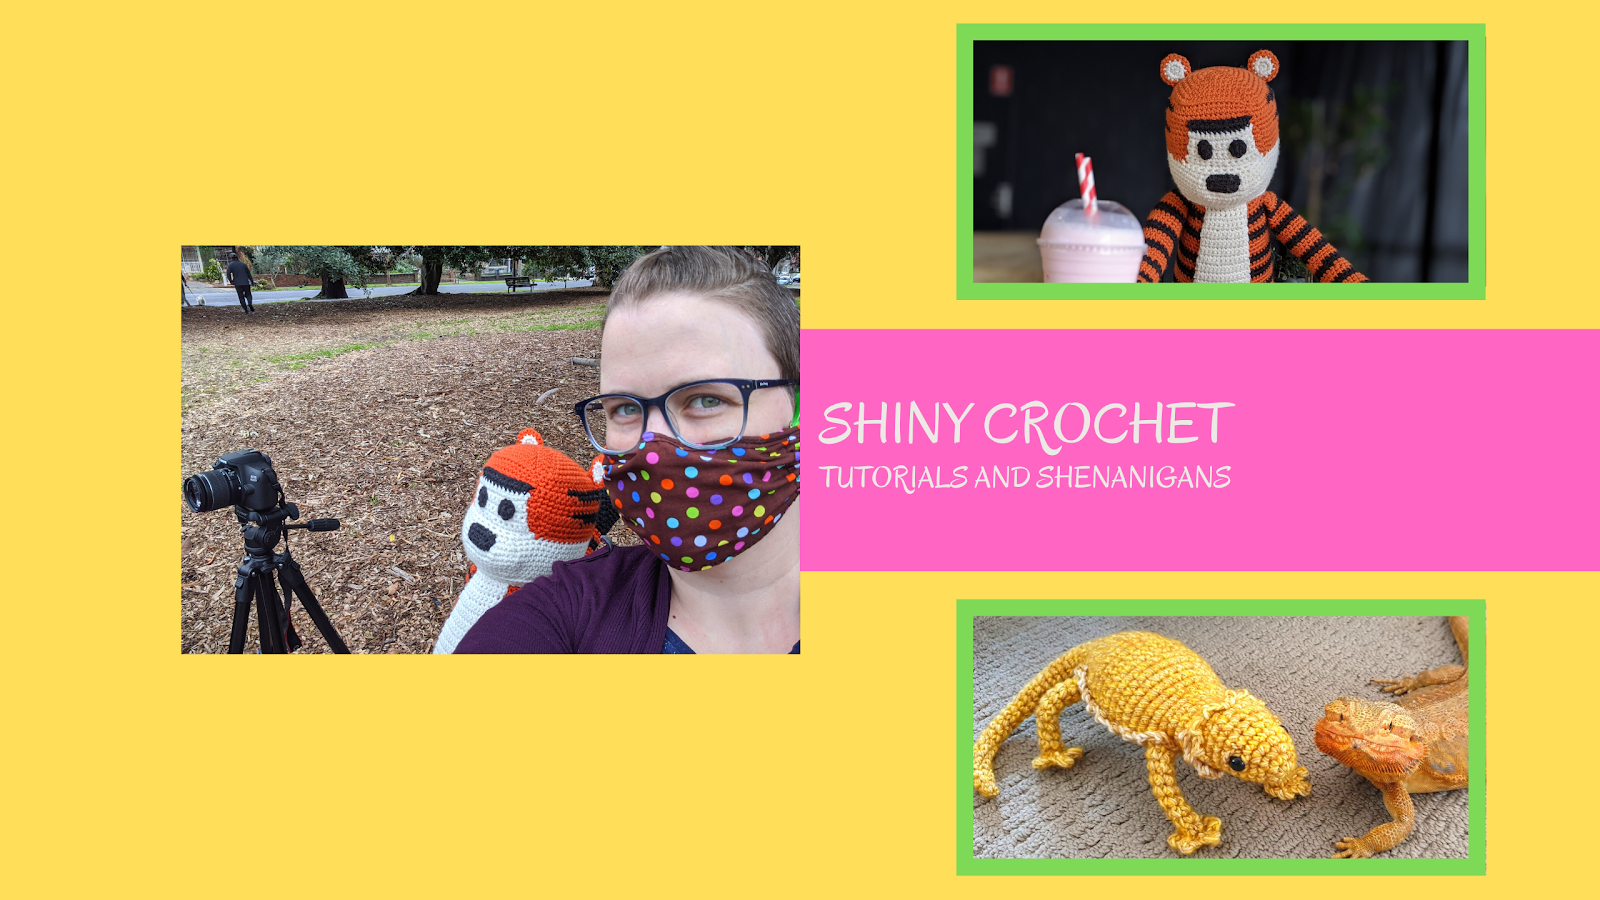 Shiny Crochet